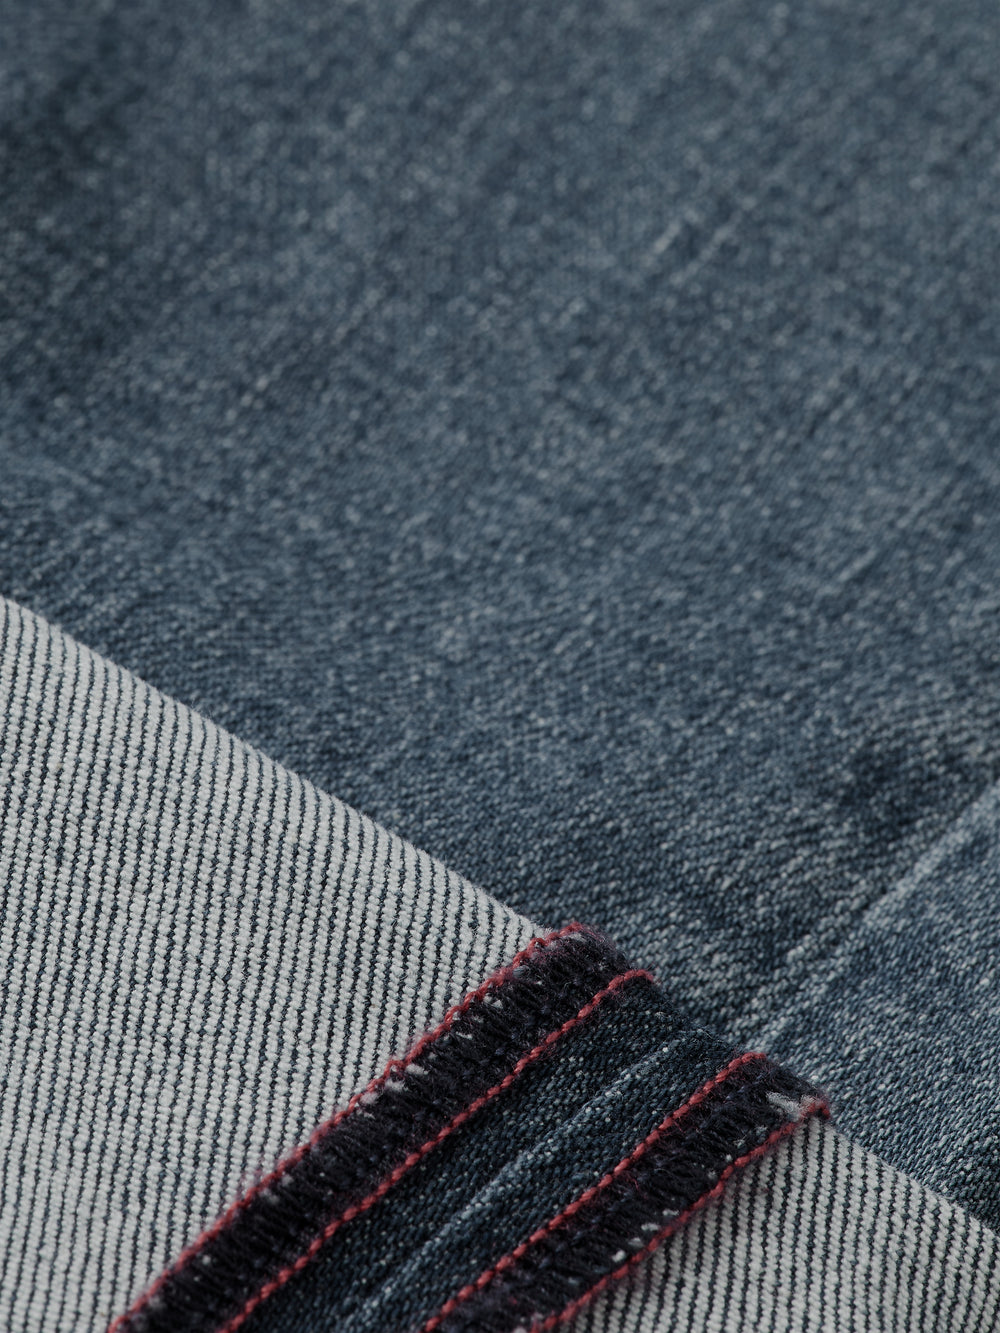 Drop regular tapered-fit jeans - Scotch & Soda AU